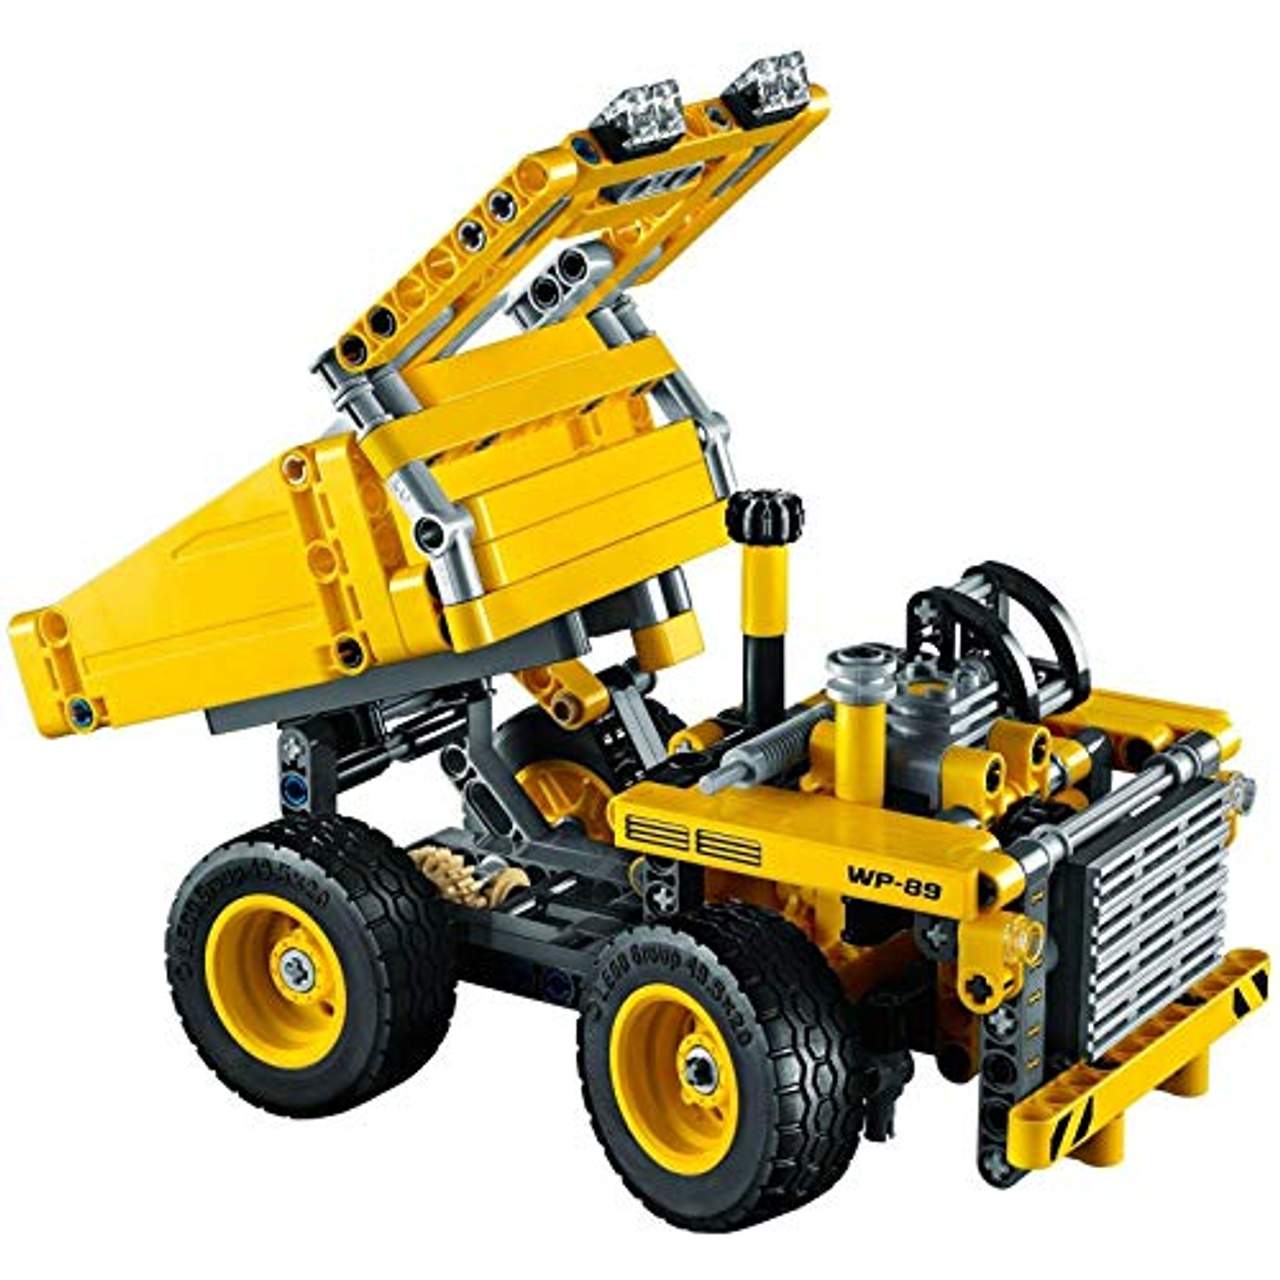 LEGO Technic 42035 Muldenkipper